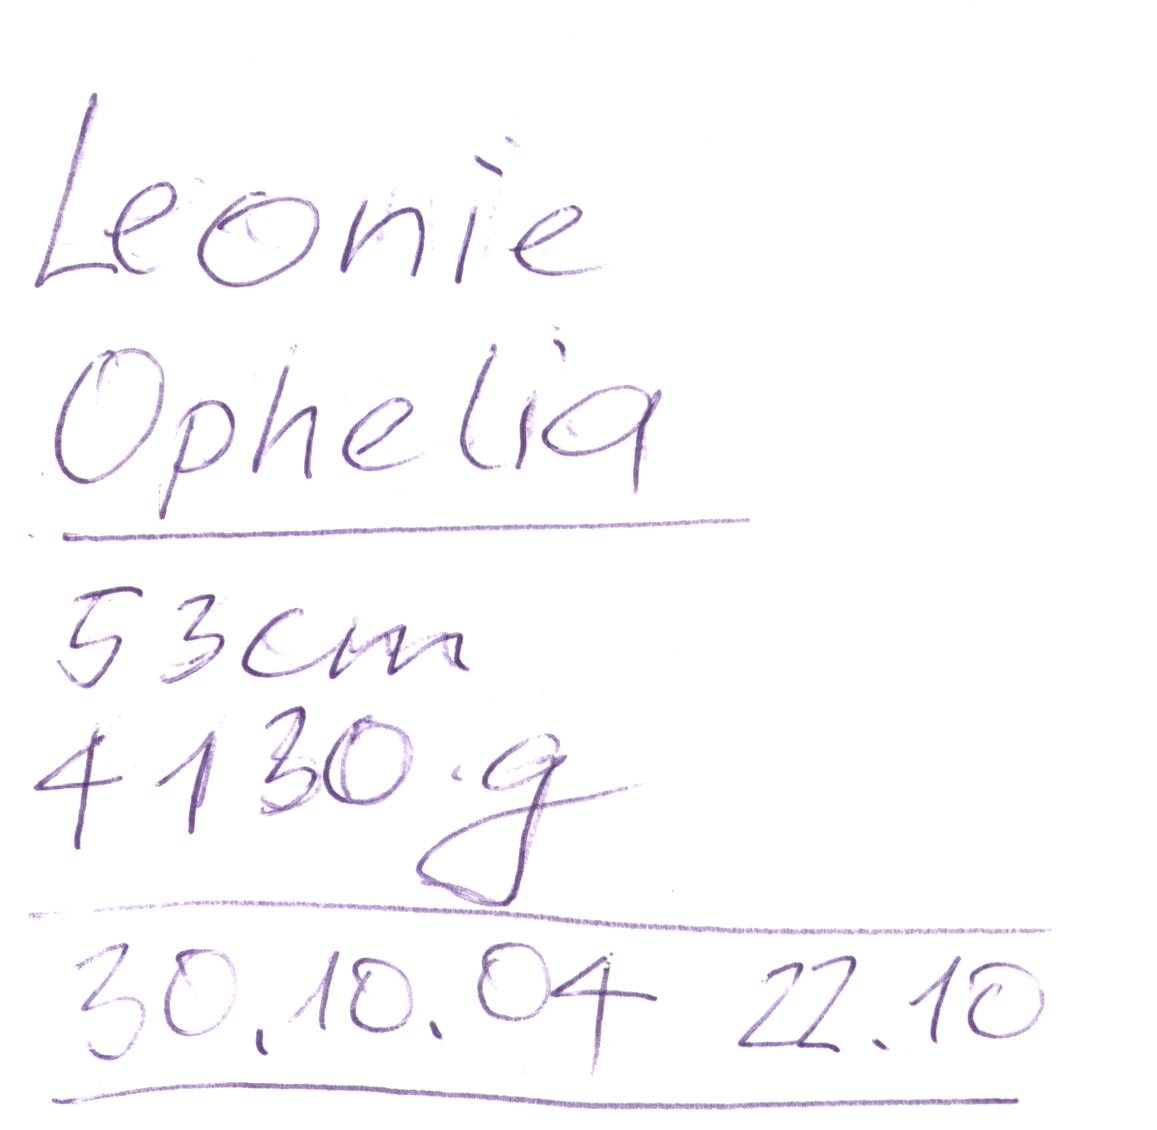 Leonie Geburt Telefonnotiz